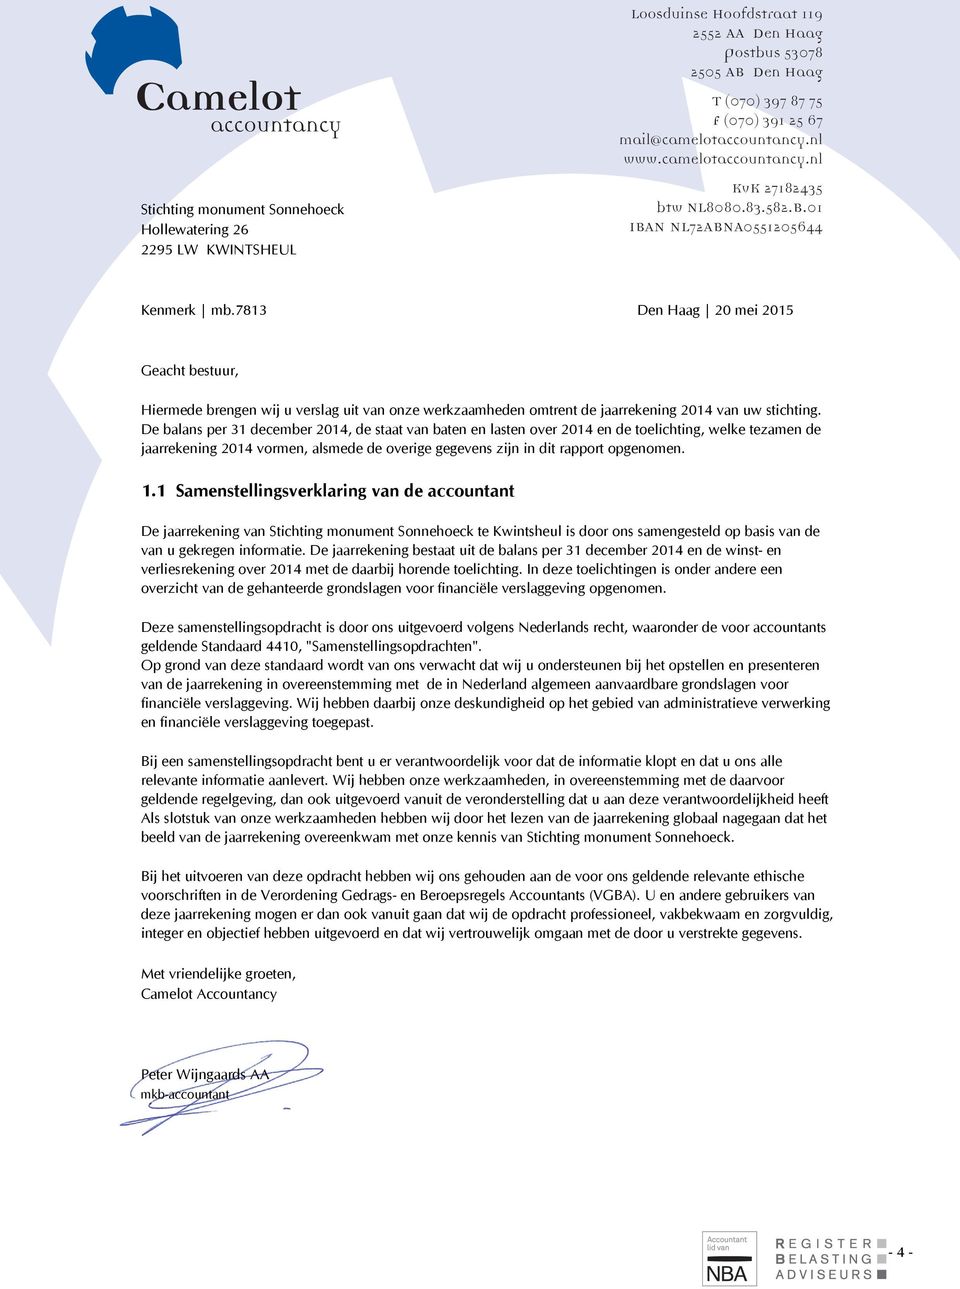 7813 Den Haag 20 mei 2015 Geacht bestuur, Hiermede brengen wij u verslag uit van onze werkzaamheden omtrent de jaarrekening 2014 van uw stichting.